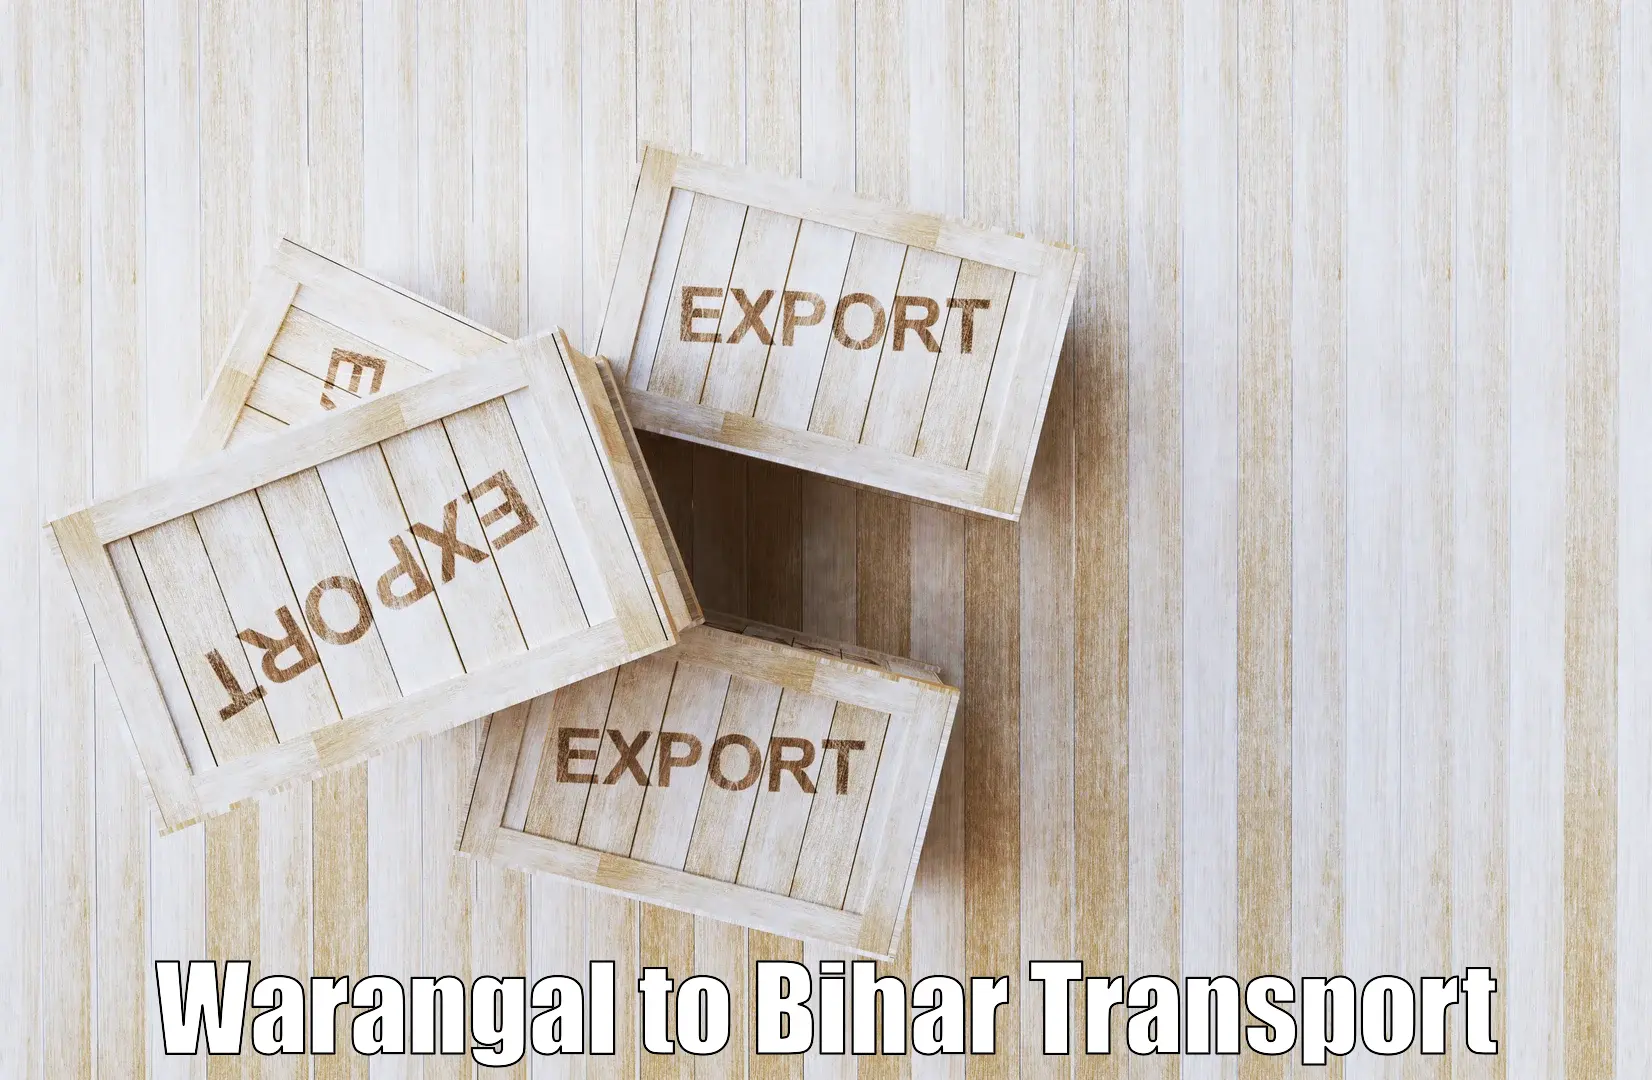 Daily transport service Warangal to Dhaka